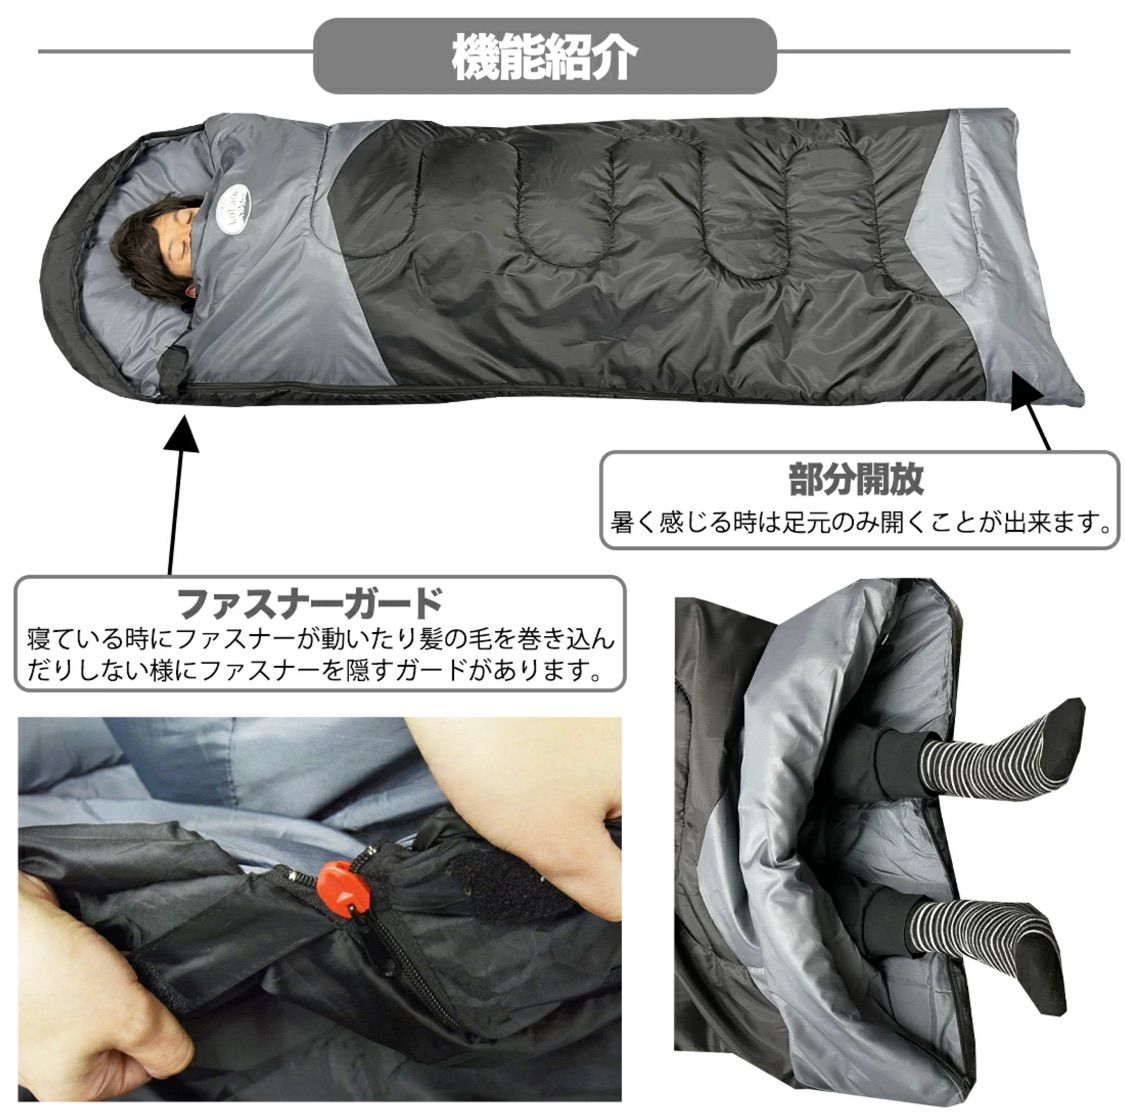 新品 寝袋-10℃封筒190Tアウトドア用品 ネイビー2個セット - 寝袋